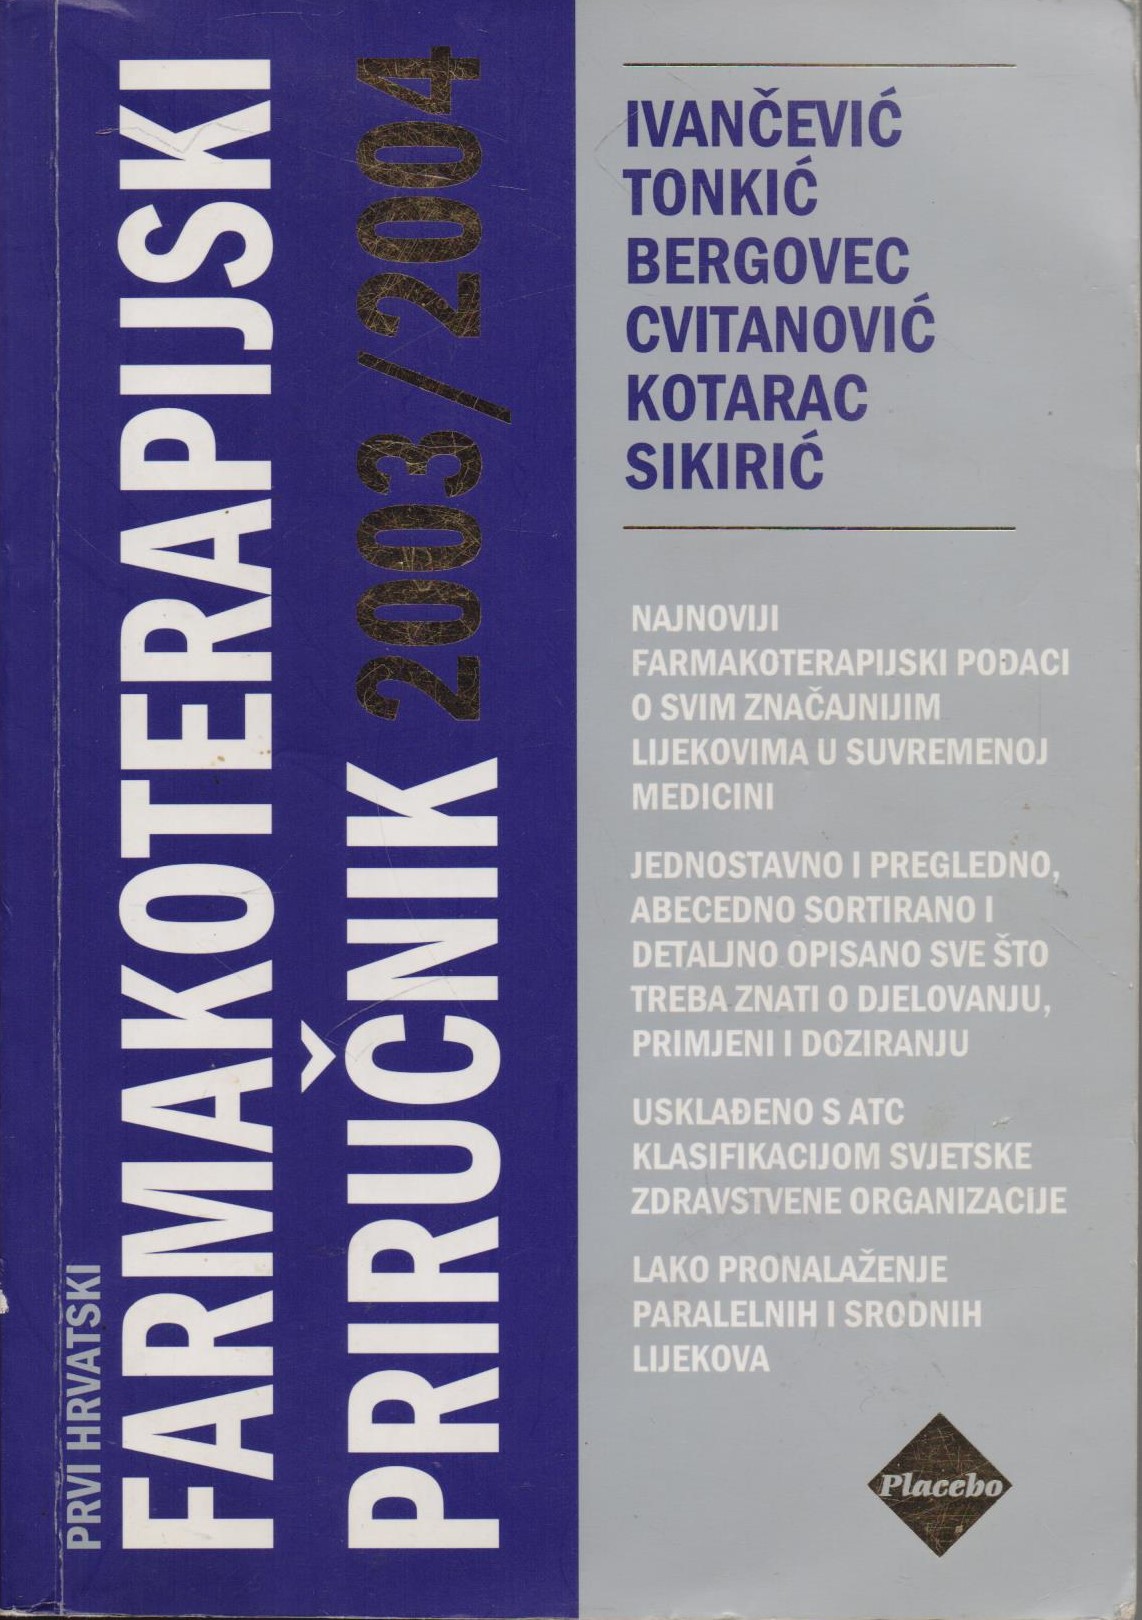 Farmakoterapijski priručnik 2003/2004 Ivančević, Tonkić, Bergovec, Cvitanović, Kotarac, Sikirić